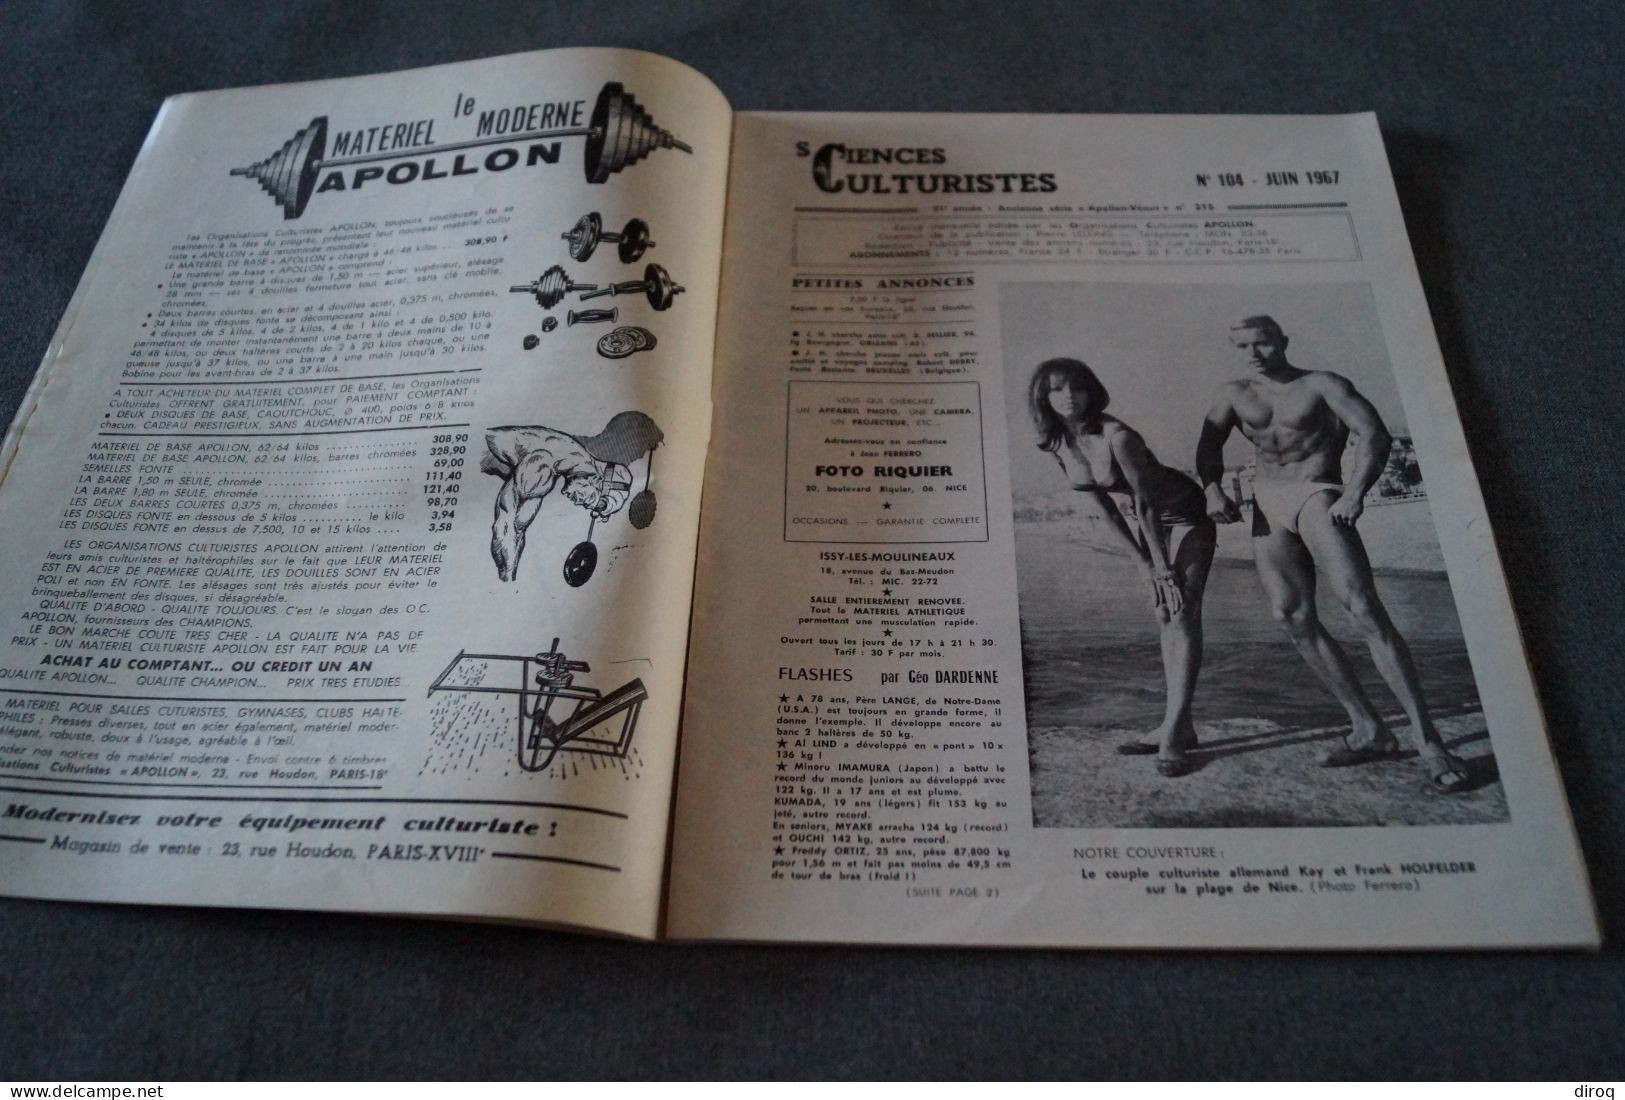 Kay Et Franck Hollfelder,1967,culturisme,complet 37 Pages ,ancien,27 Cm. Sur 21 Cm. - Athlétisme